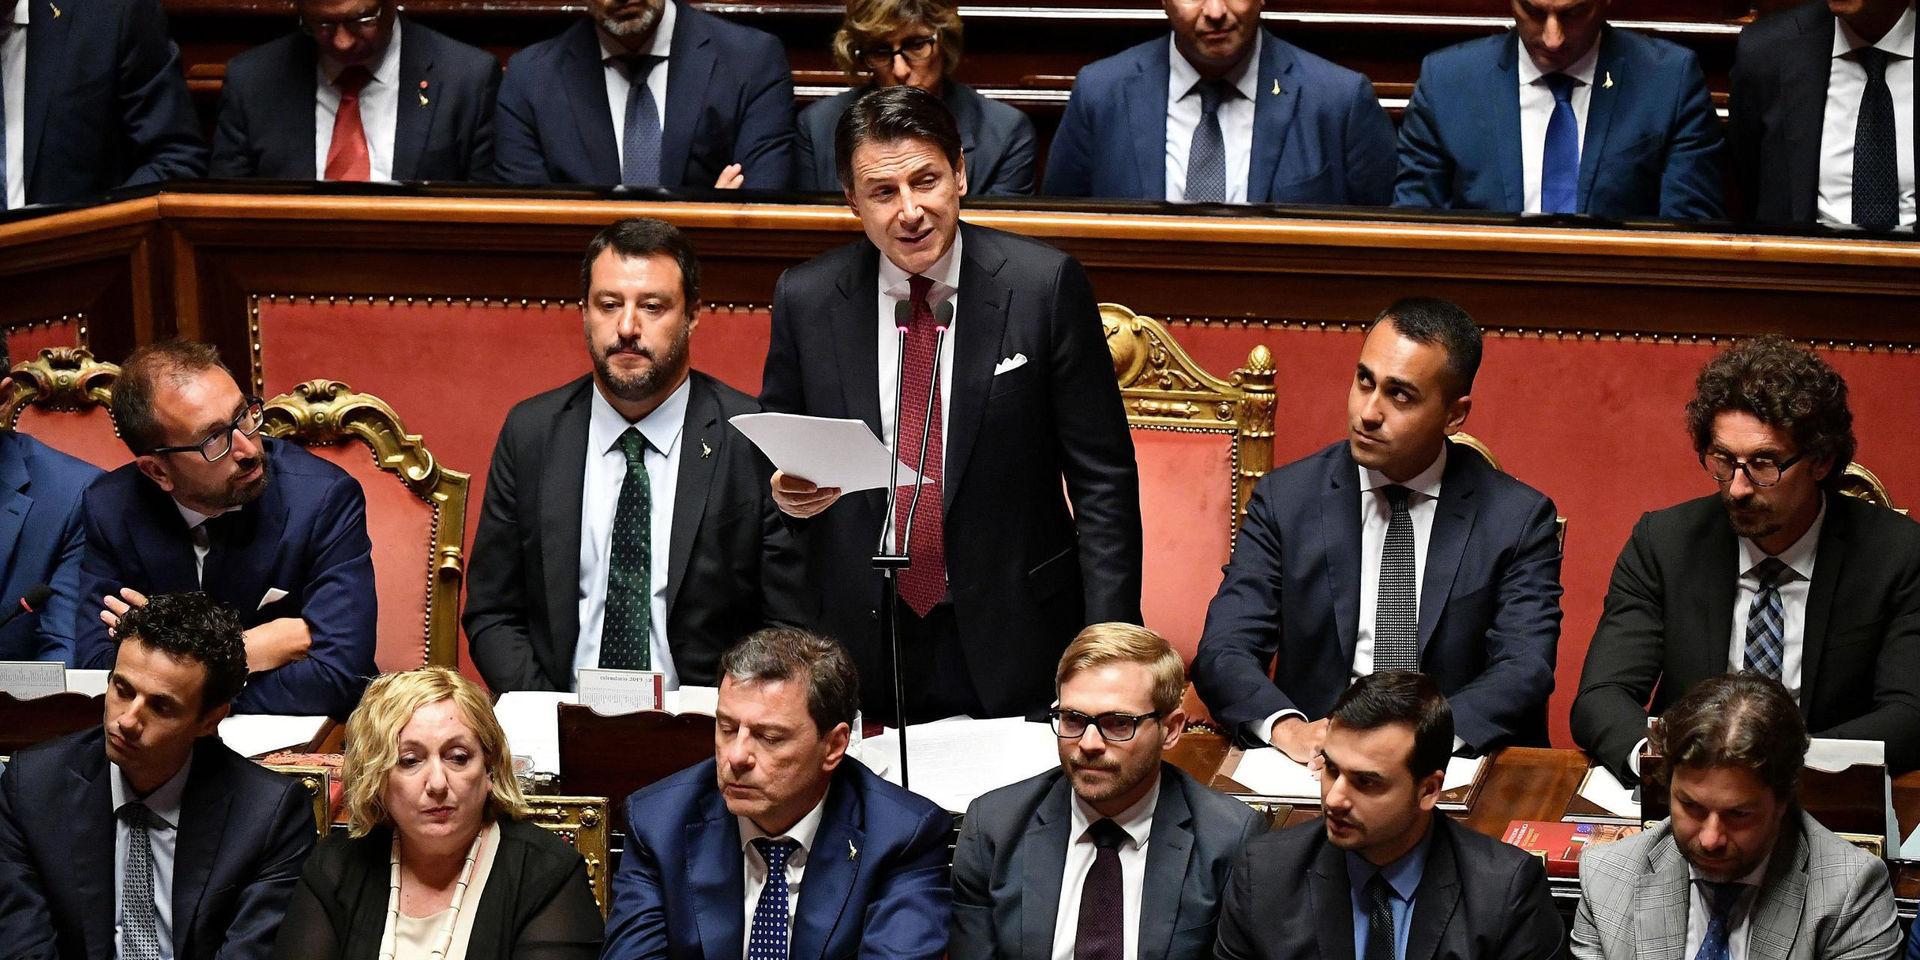 Inrikesminister, vice premiärminister och Legaledaren Matteo Salvini satt strax till vänster om premiärminister Giuseppe Conte när han meddelade att han avgår.